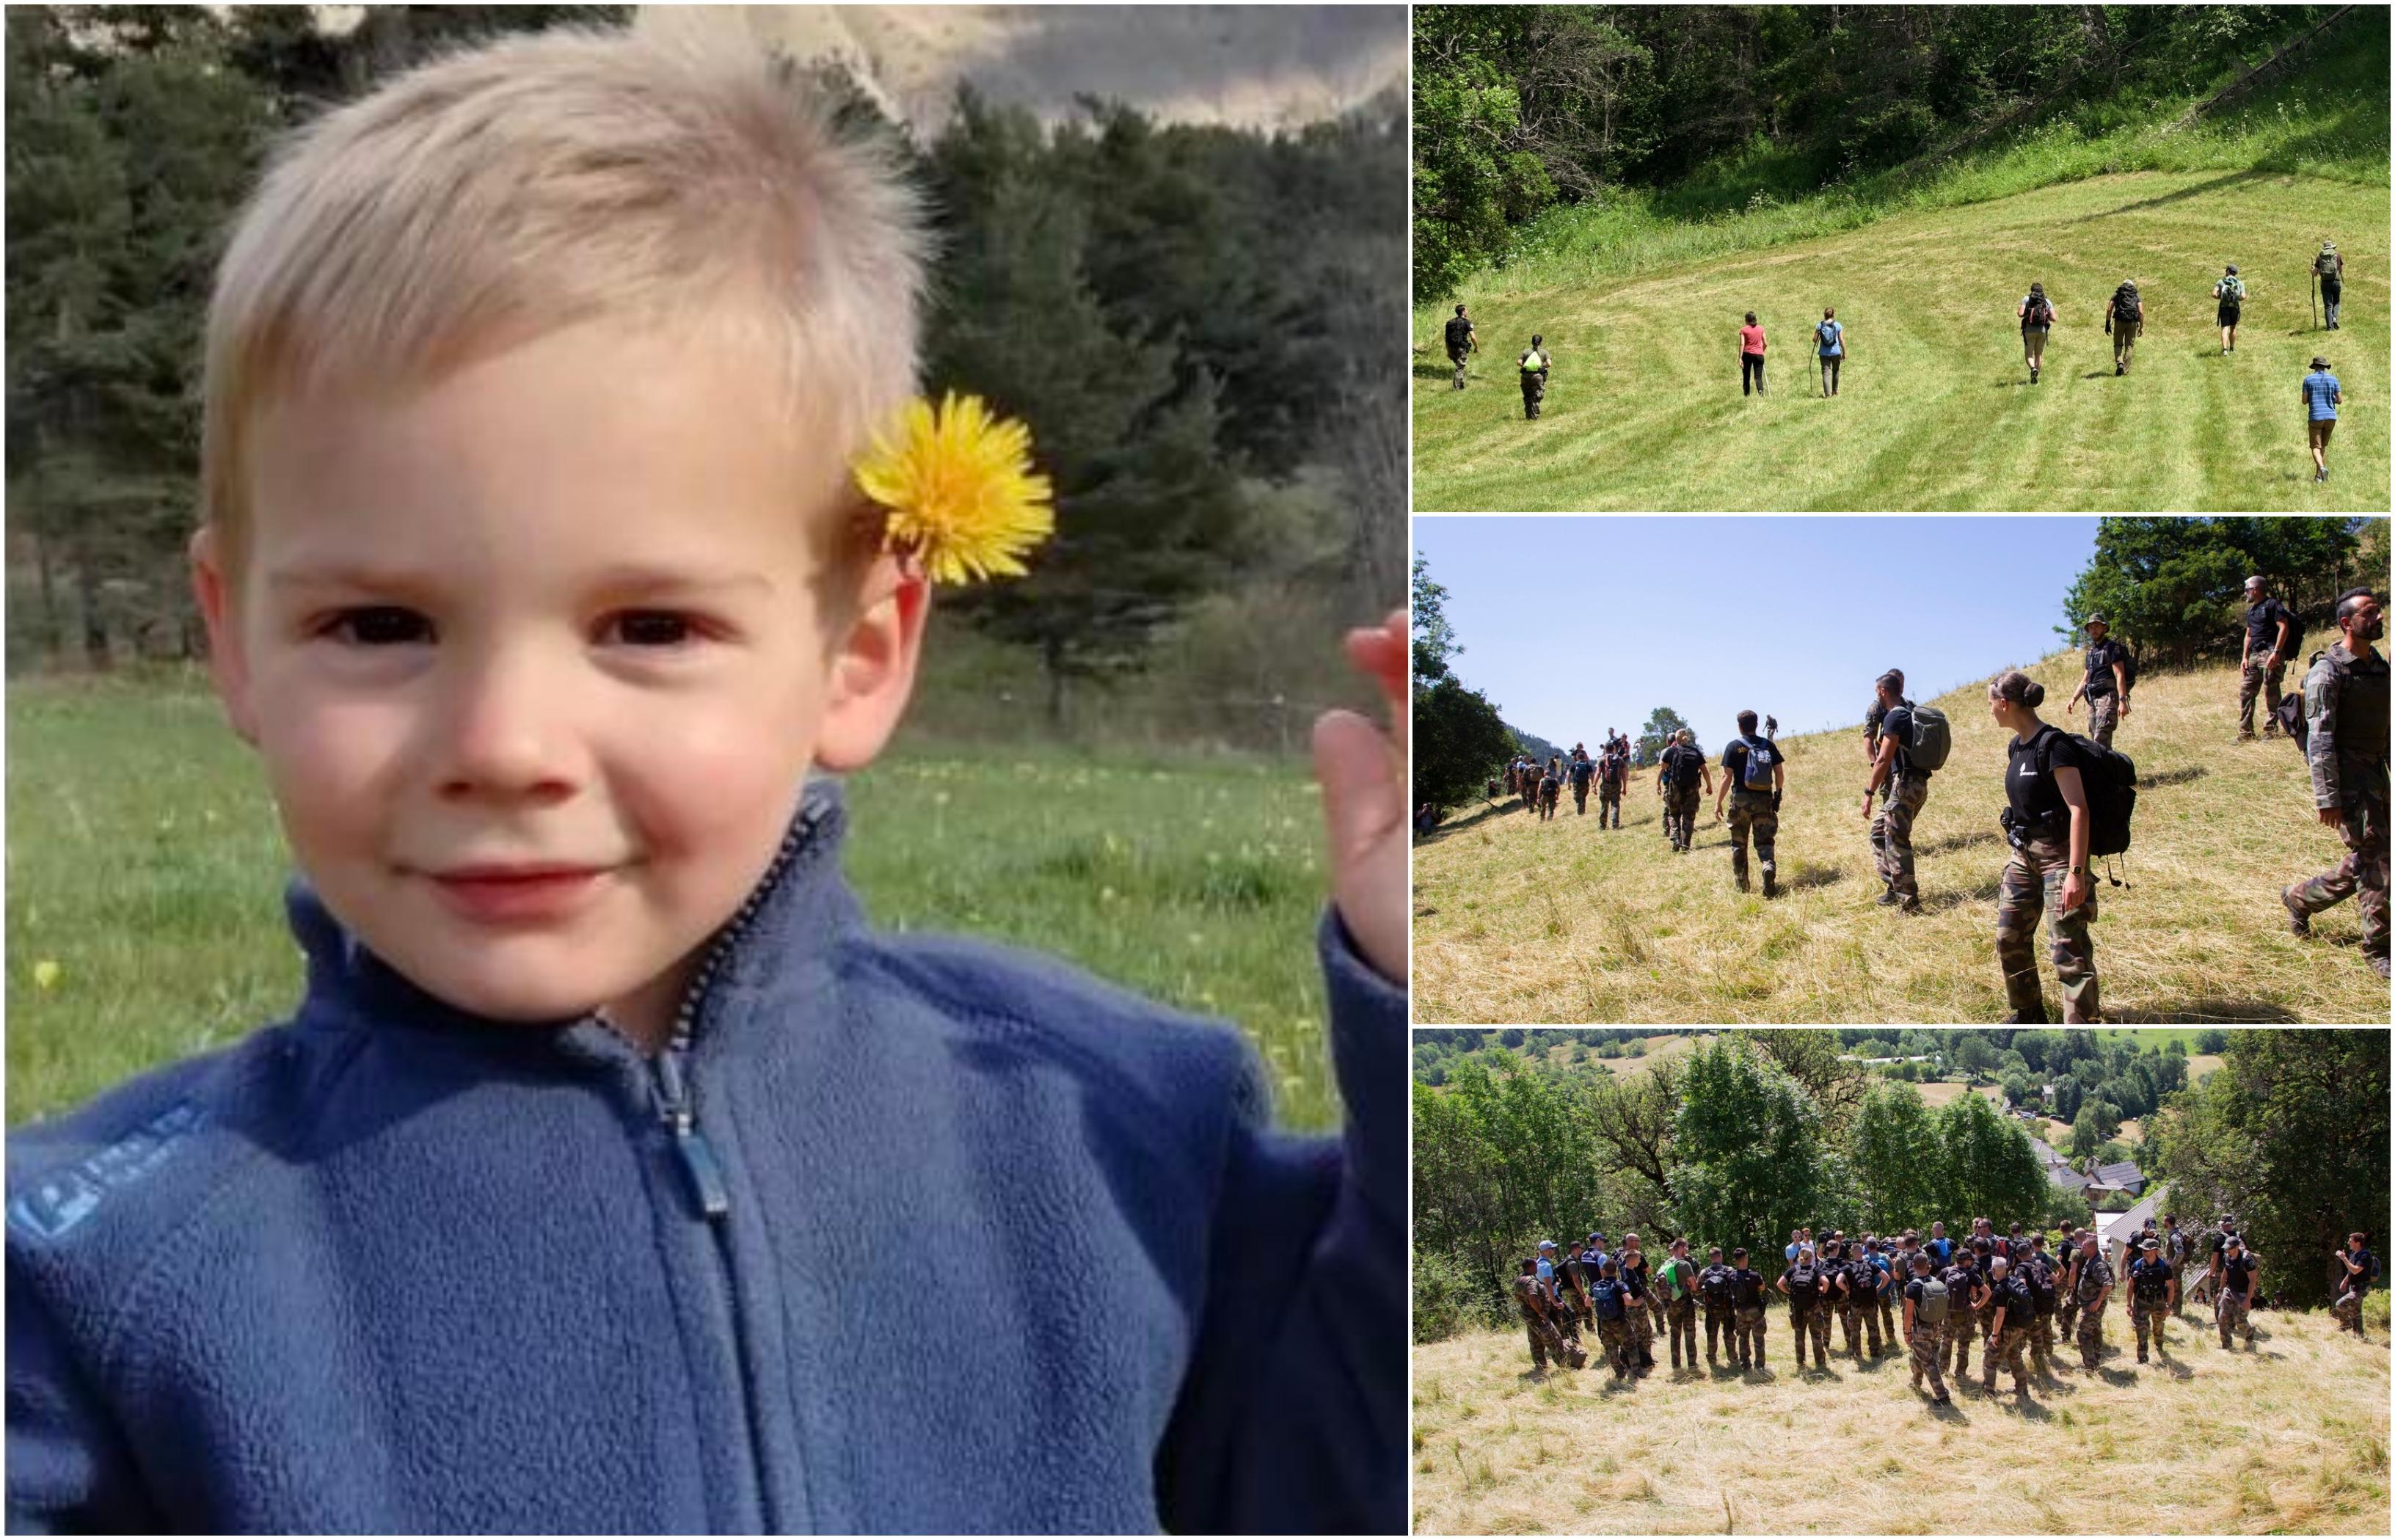 Băieţel de 2 ani dispărut, căutat de zeci de oameni în Franţa. Emile se juca singur în grădina bunicii, când s-a făcut nevăzut